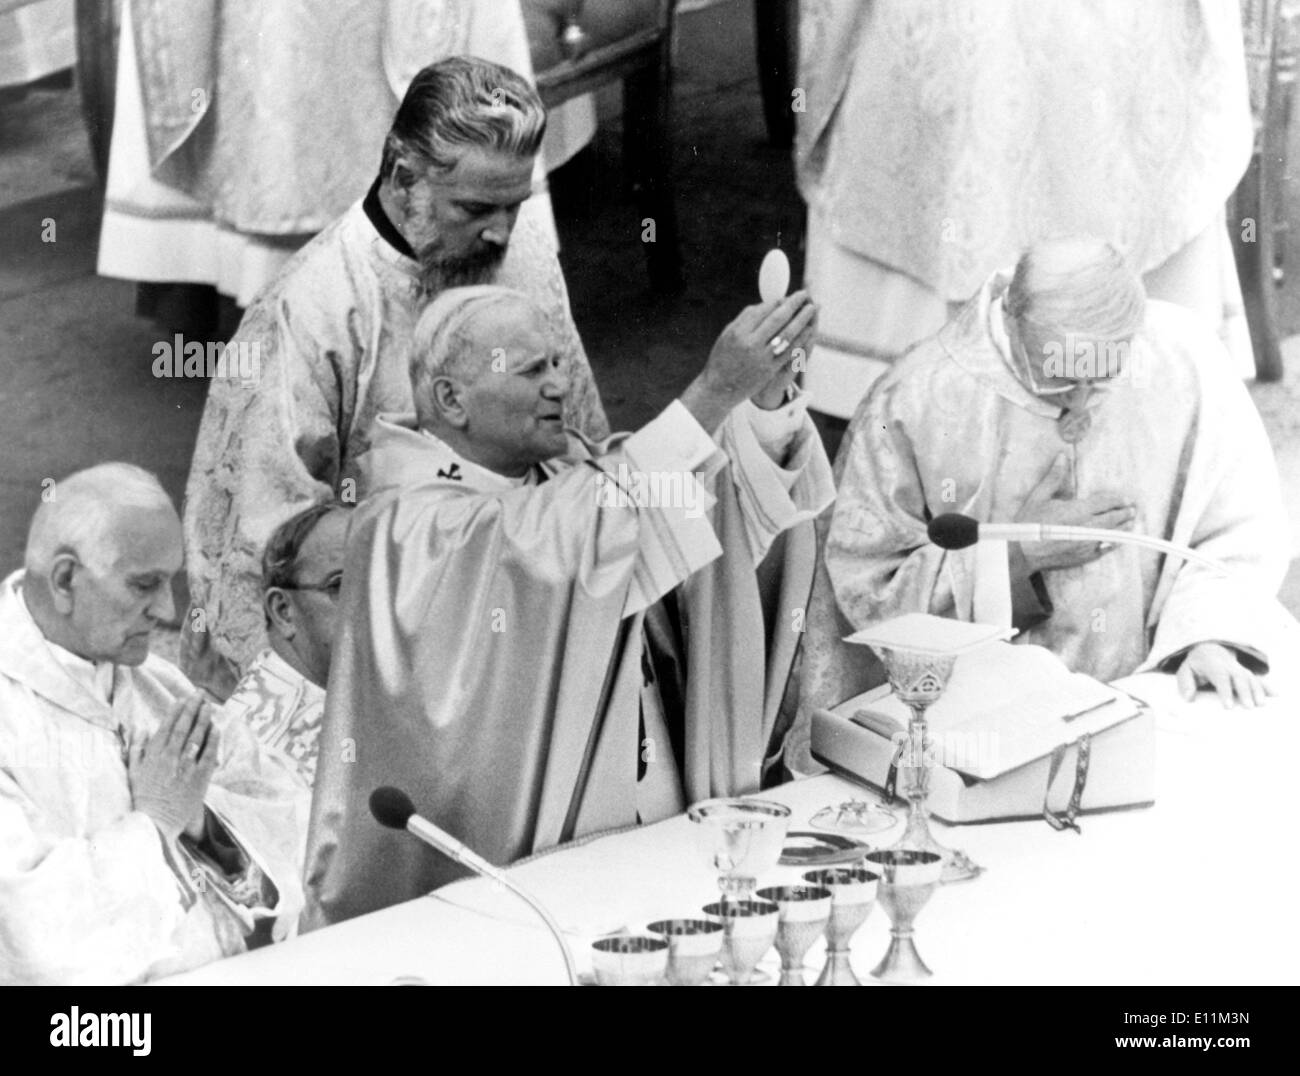 5216140 (900326) Papst JOHANNES PAUL II. haelt bei seiner Inthronisation eine Hostie in die Hoehe. Vatikanstadt , 23.10.1978. Stock Photo